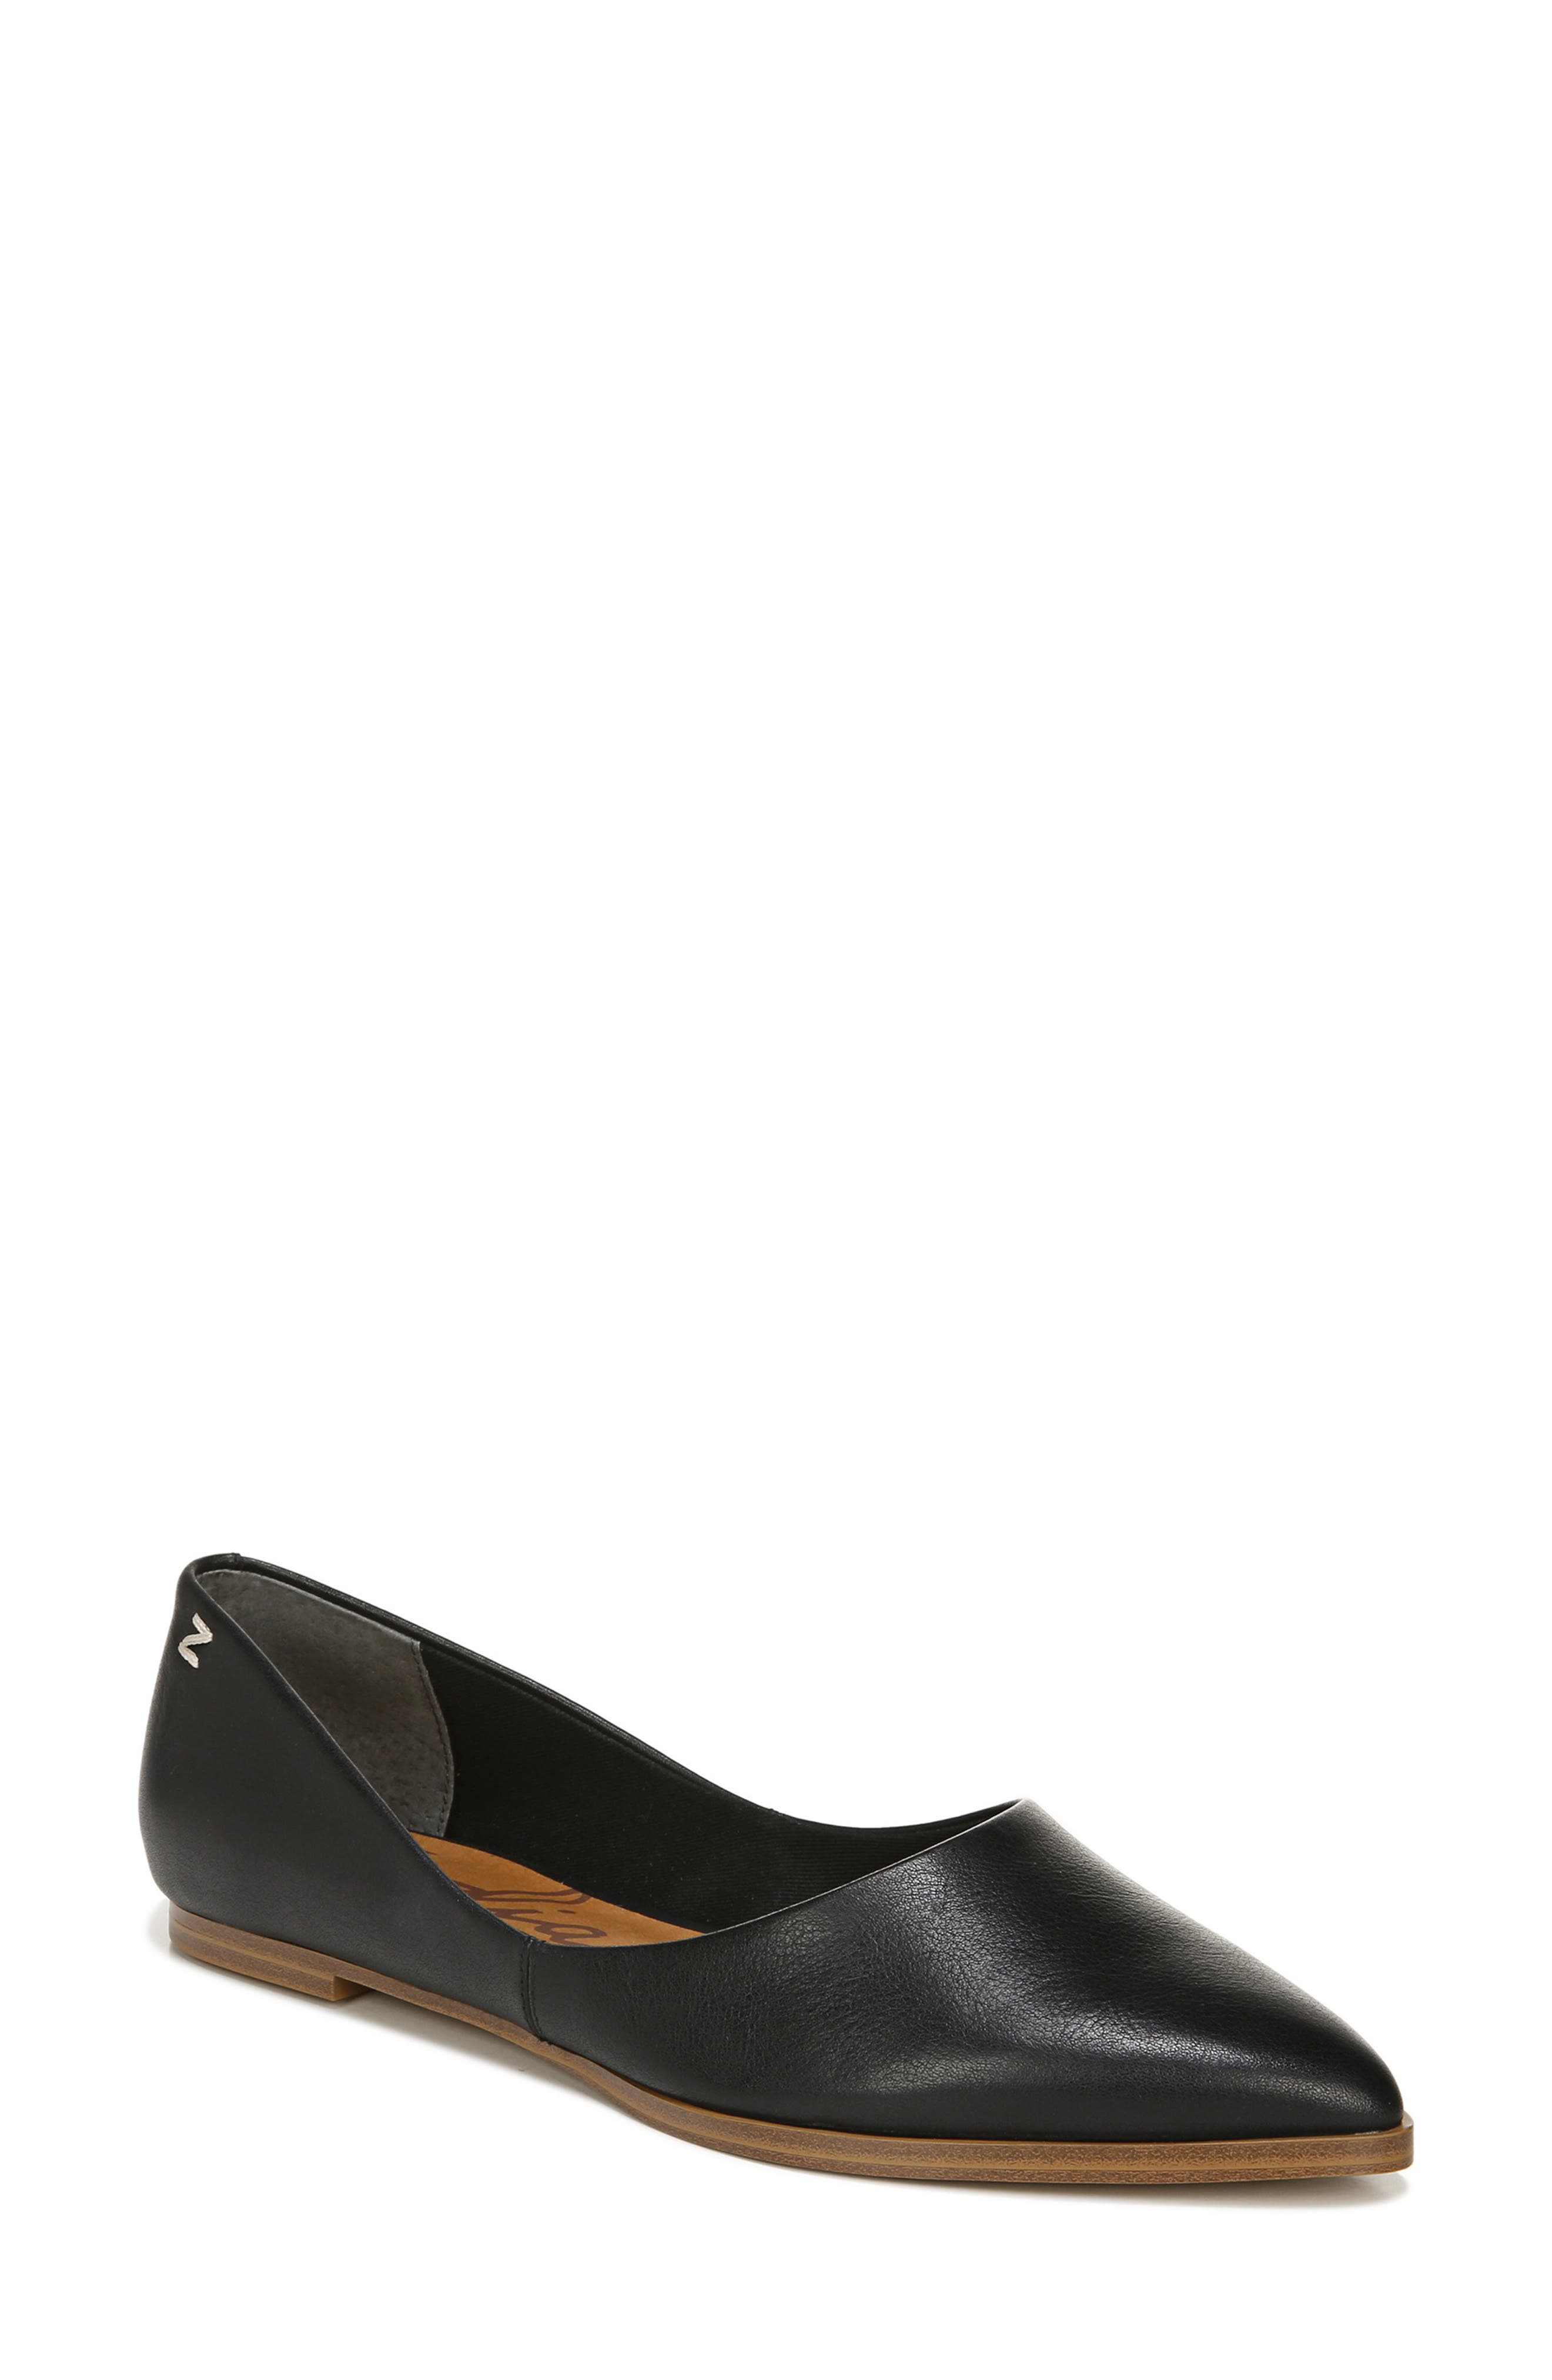 7631円 【2021新春福袋】 Zodiac ファッション サンダル Womens Adelanto Leather Toe Loop Cork Wedge Flat Sandals Shoes